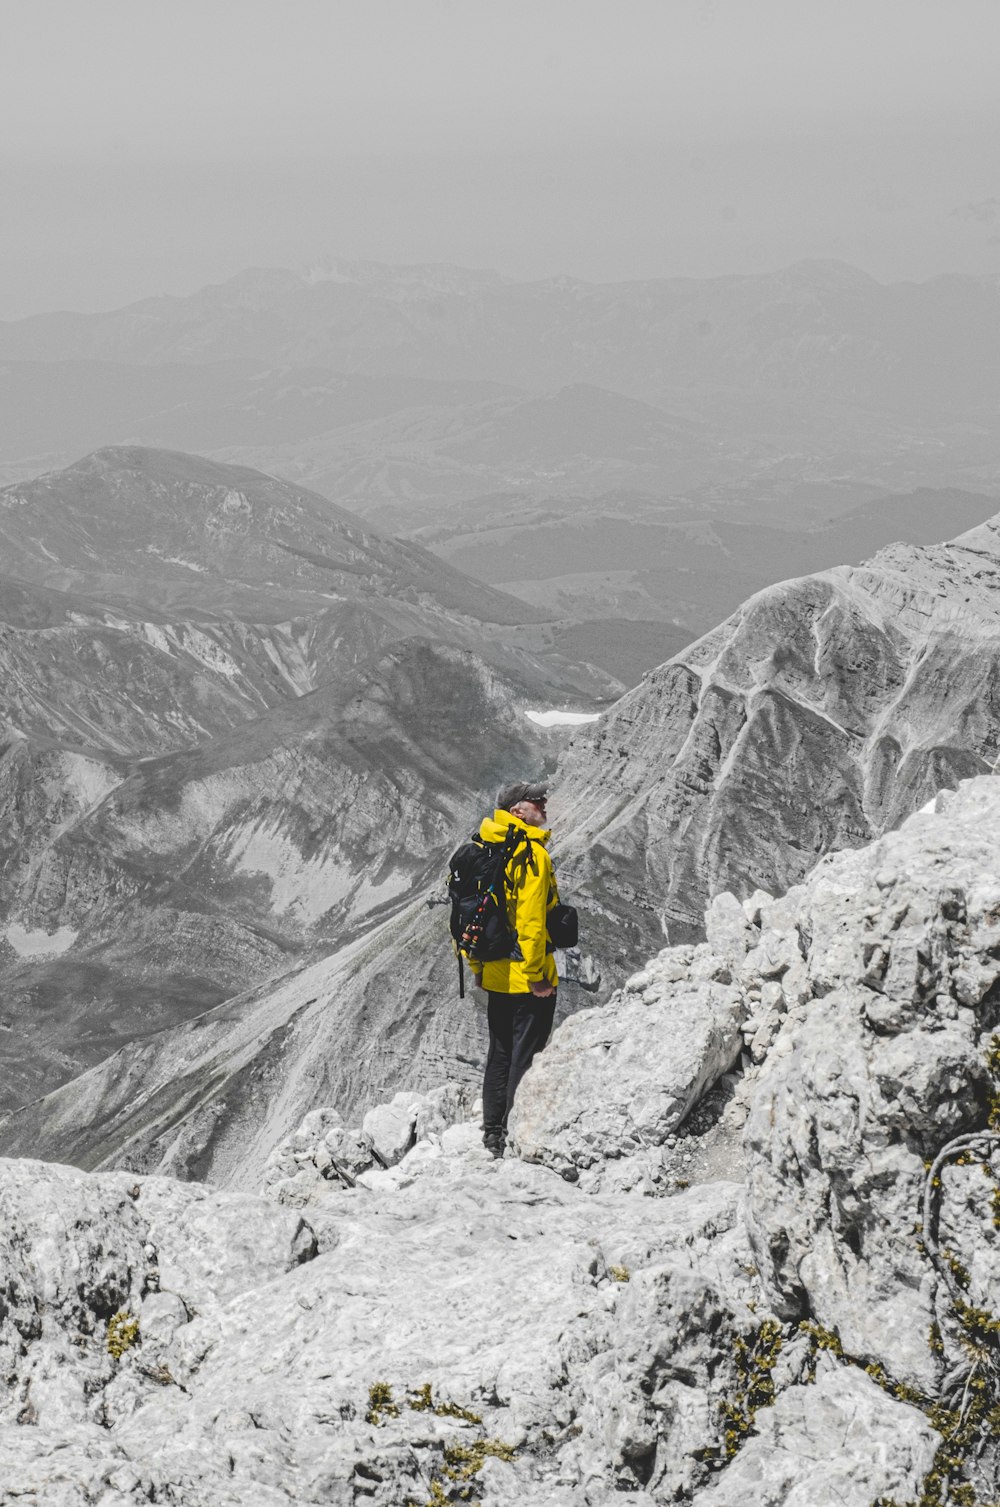 노란 재킷을 입고 검은 바지를 입은 사람이 낮에 눈 덮인 산에 서 있다